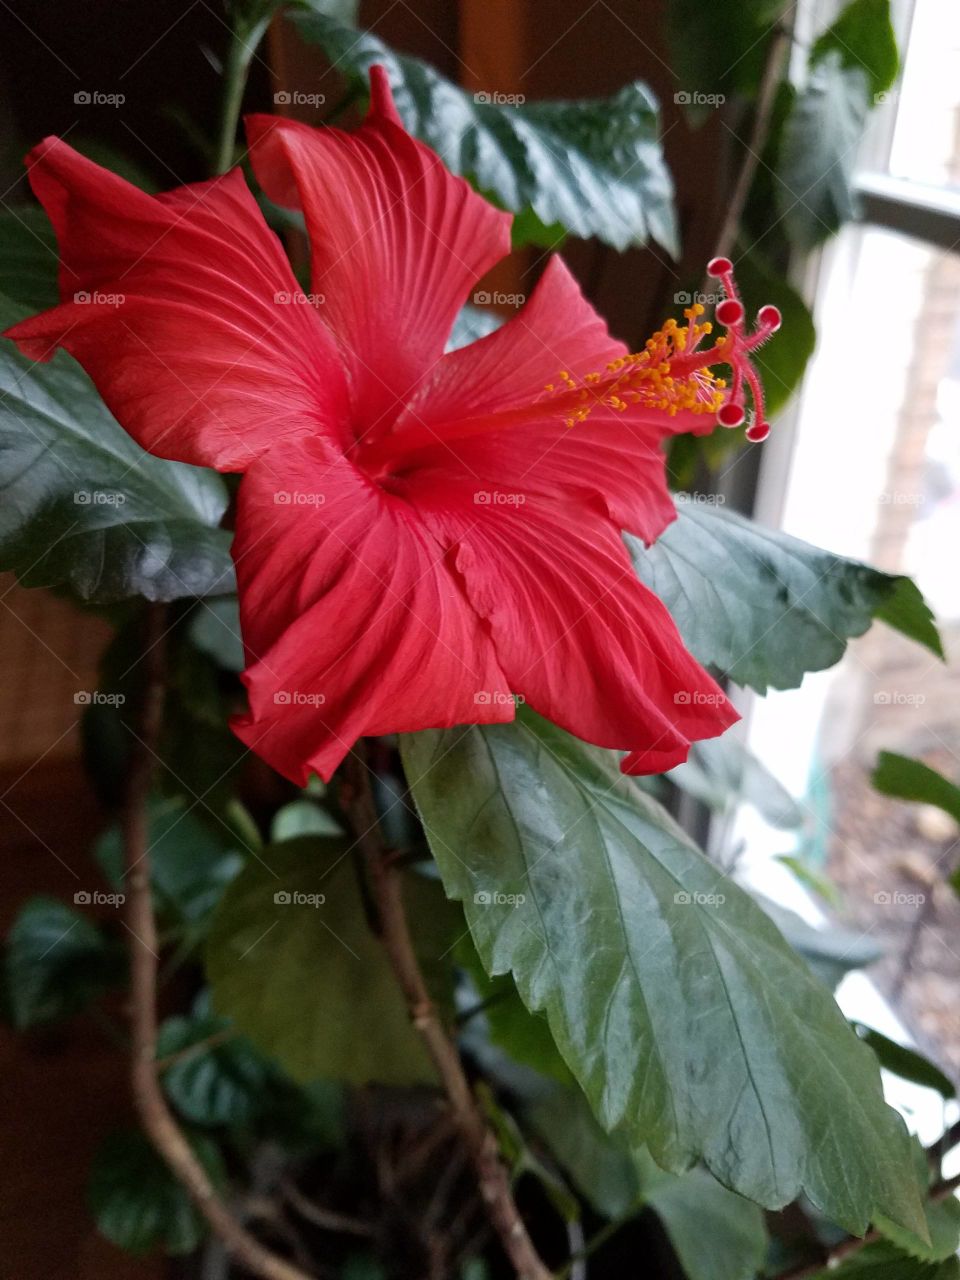 Flower growing inside